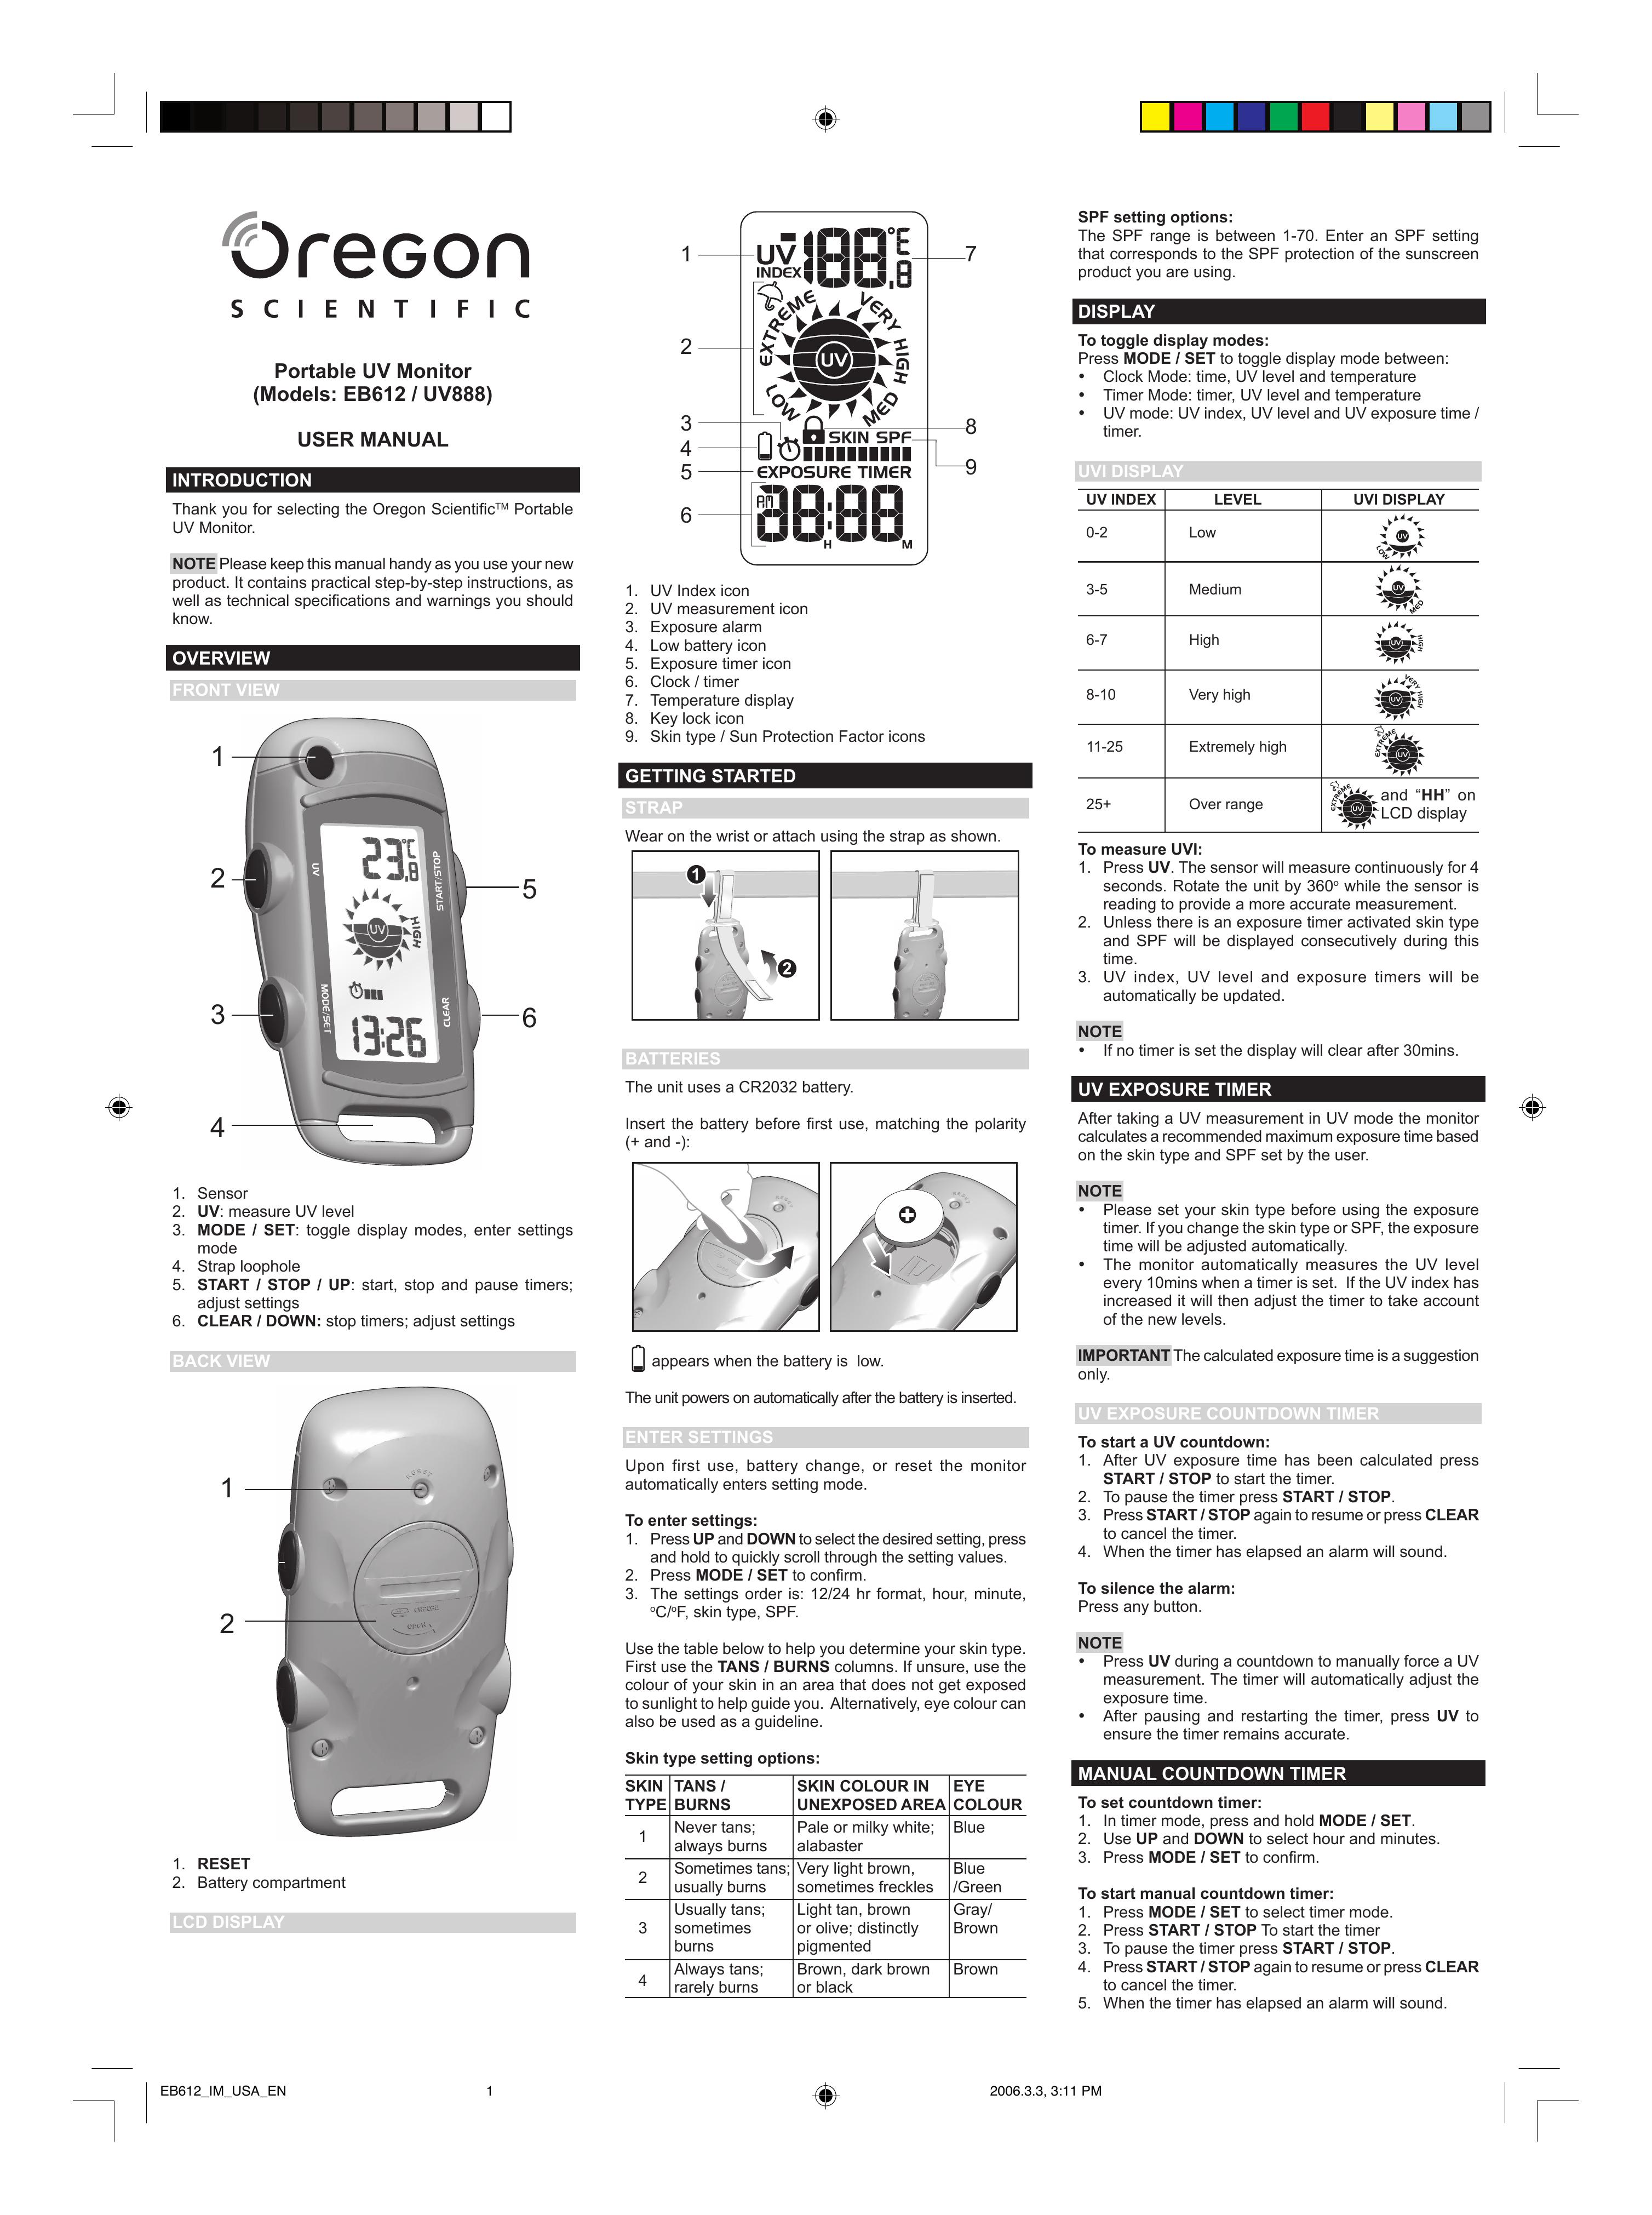 Oregon Scientific E8612 Light Therapy Device User Manual